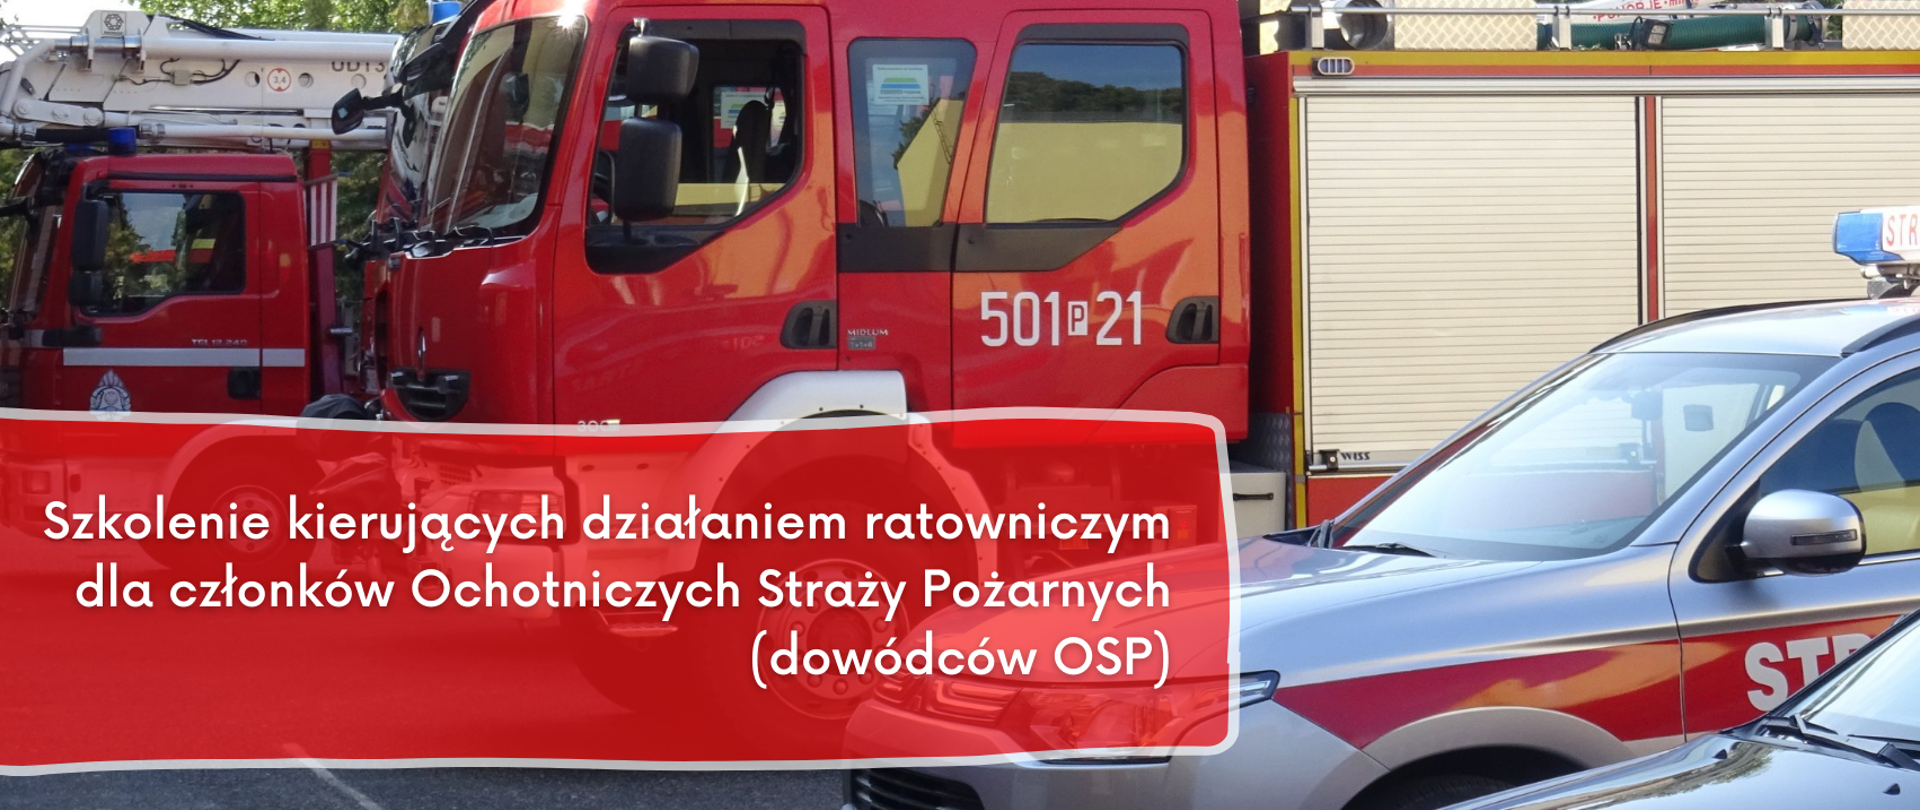 Zdjęcie przedstawia baner, na którym widać samochody pożarnicze i napis.